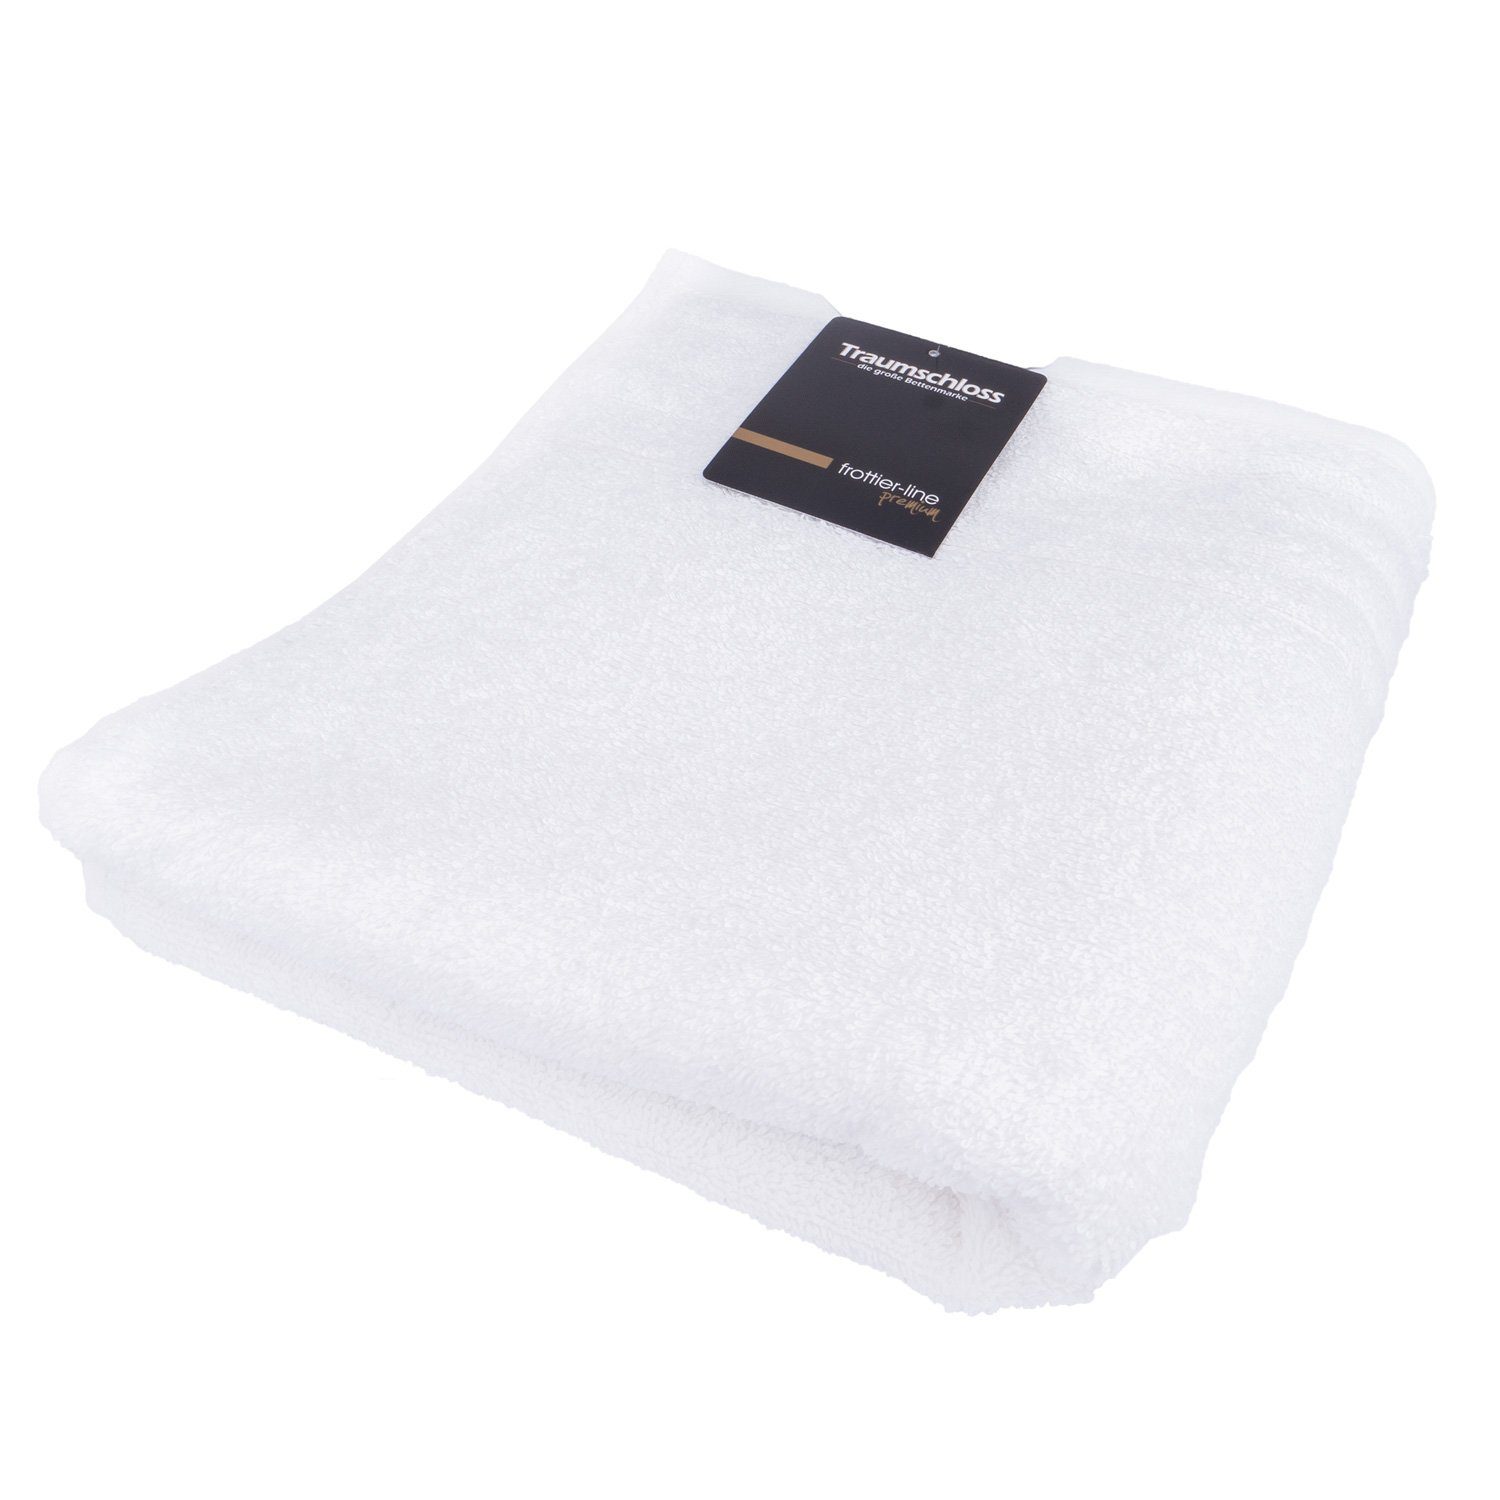 600g/m² Frottier amerikanische Handtuch (1-St), Baumwolle Supima 100% weiß Traumschloss mit Premium-Line,